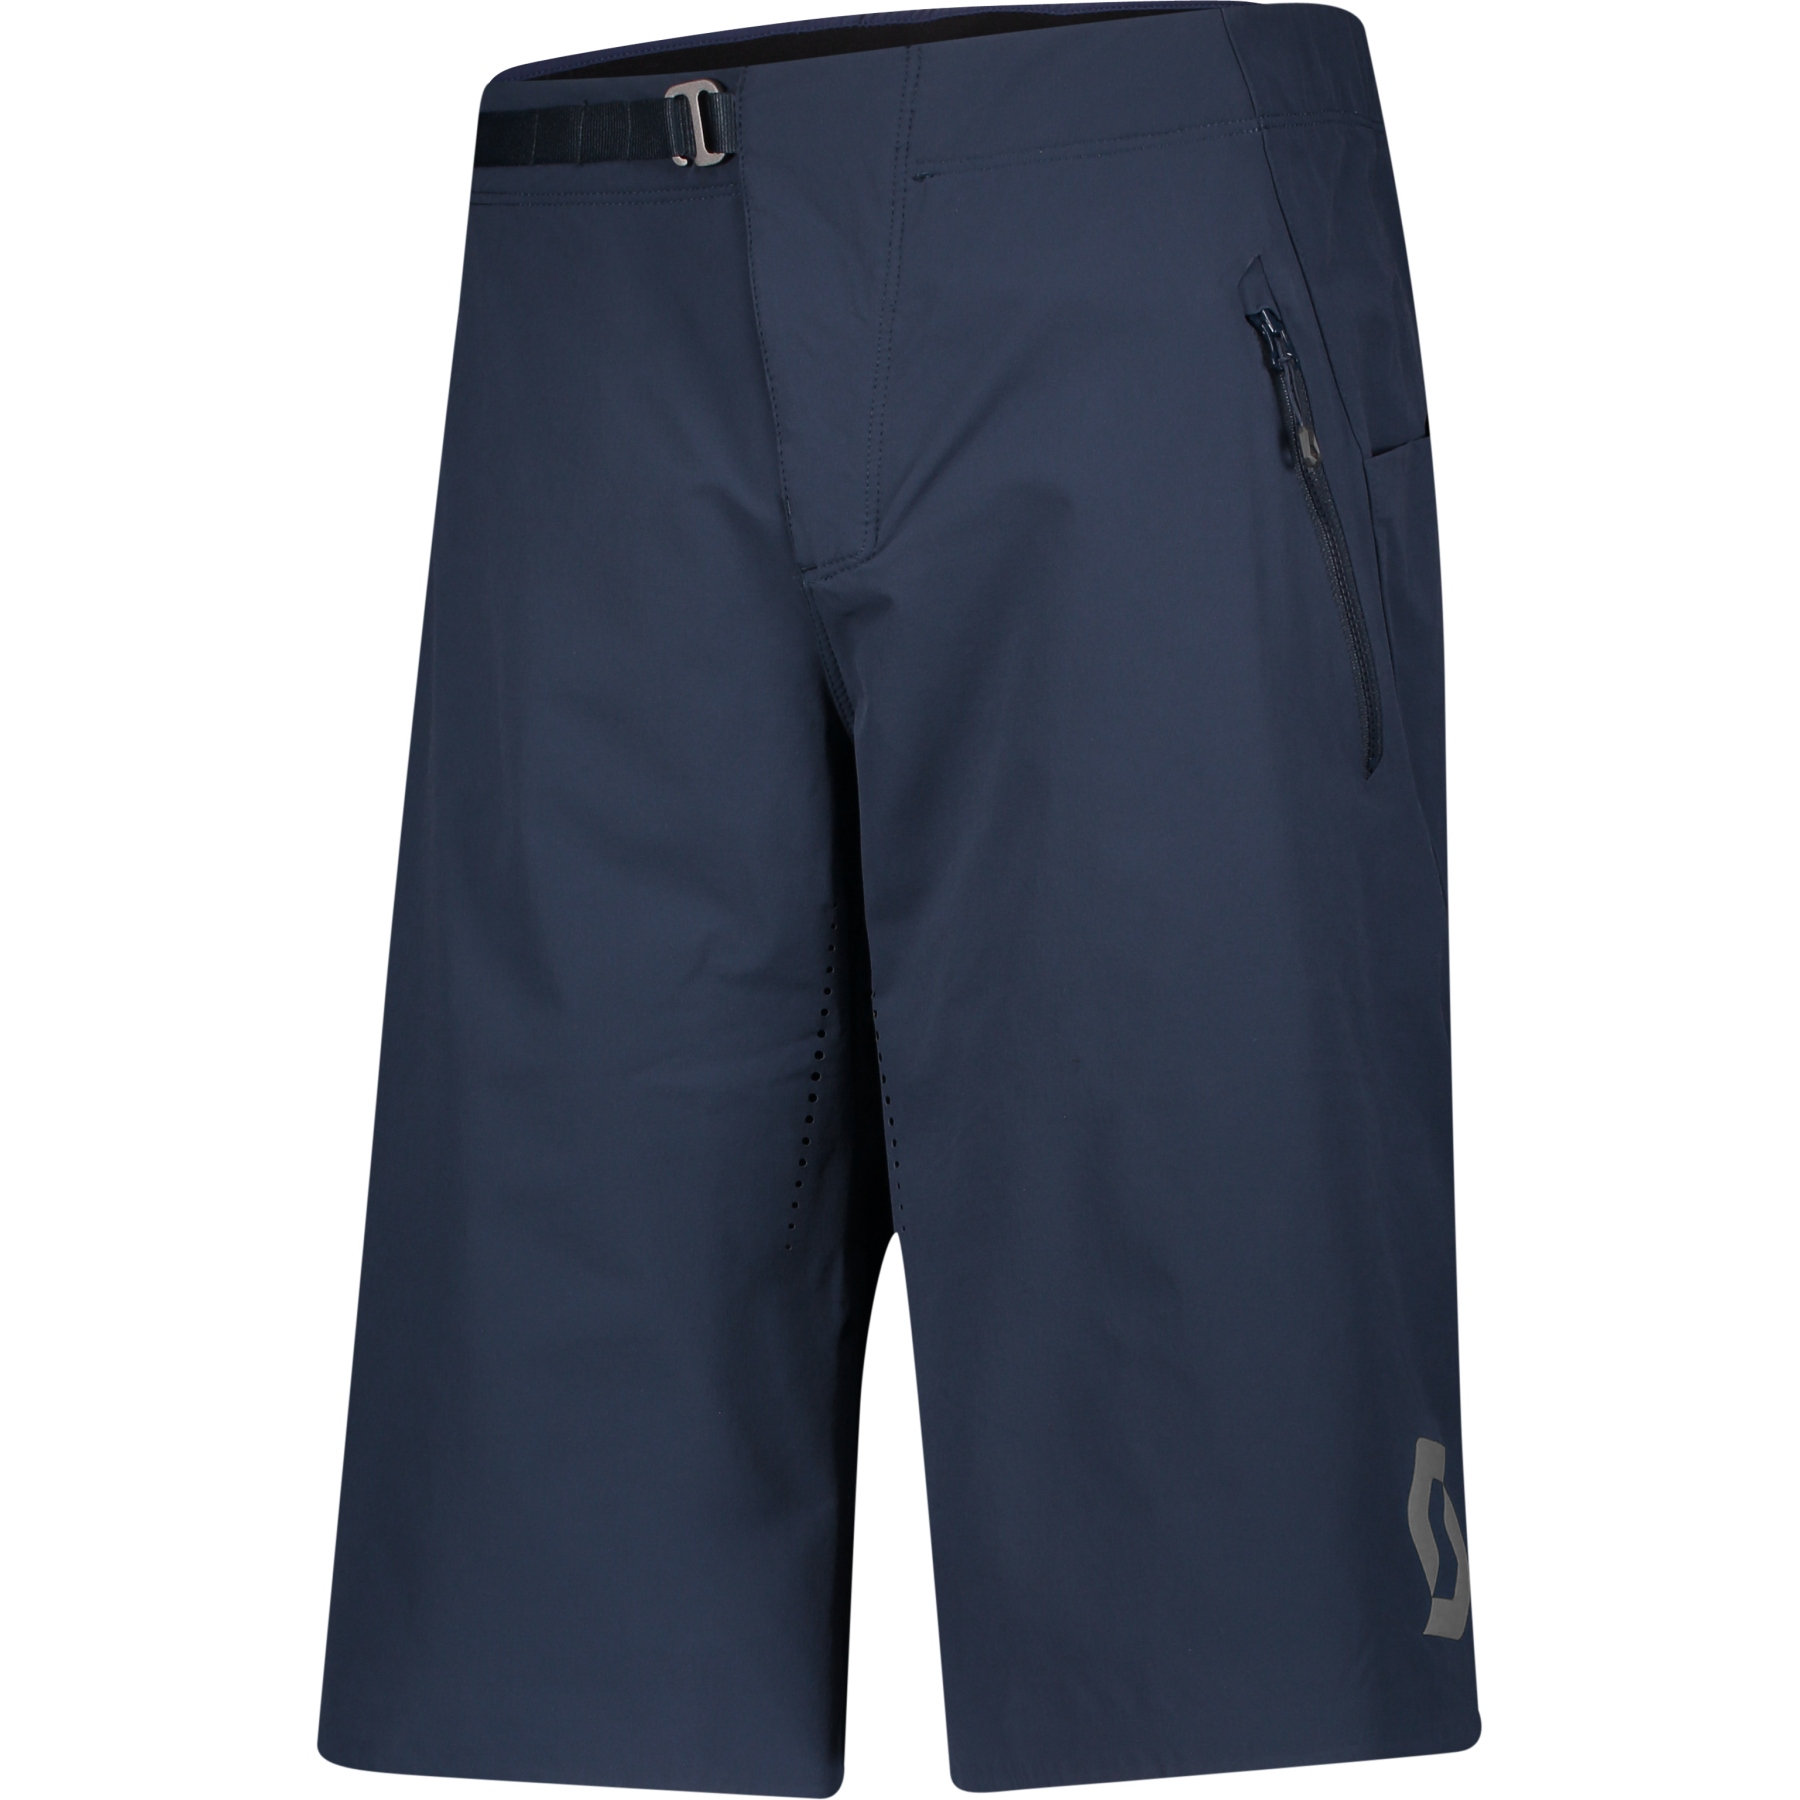 Produktbild von SCOTT Trail Vertic Pro Bike Shorts mit Sitzpolster - midnight blue